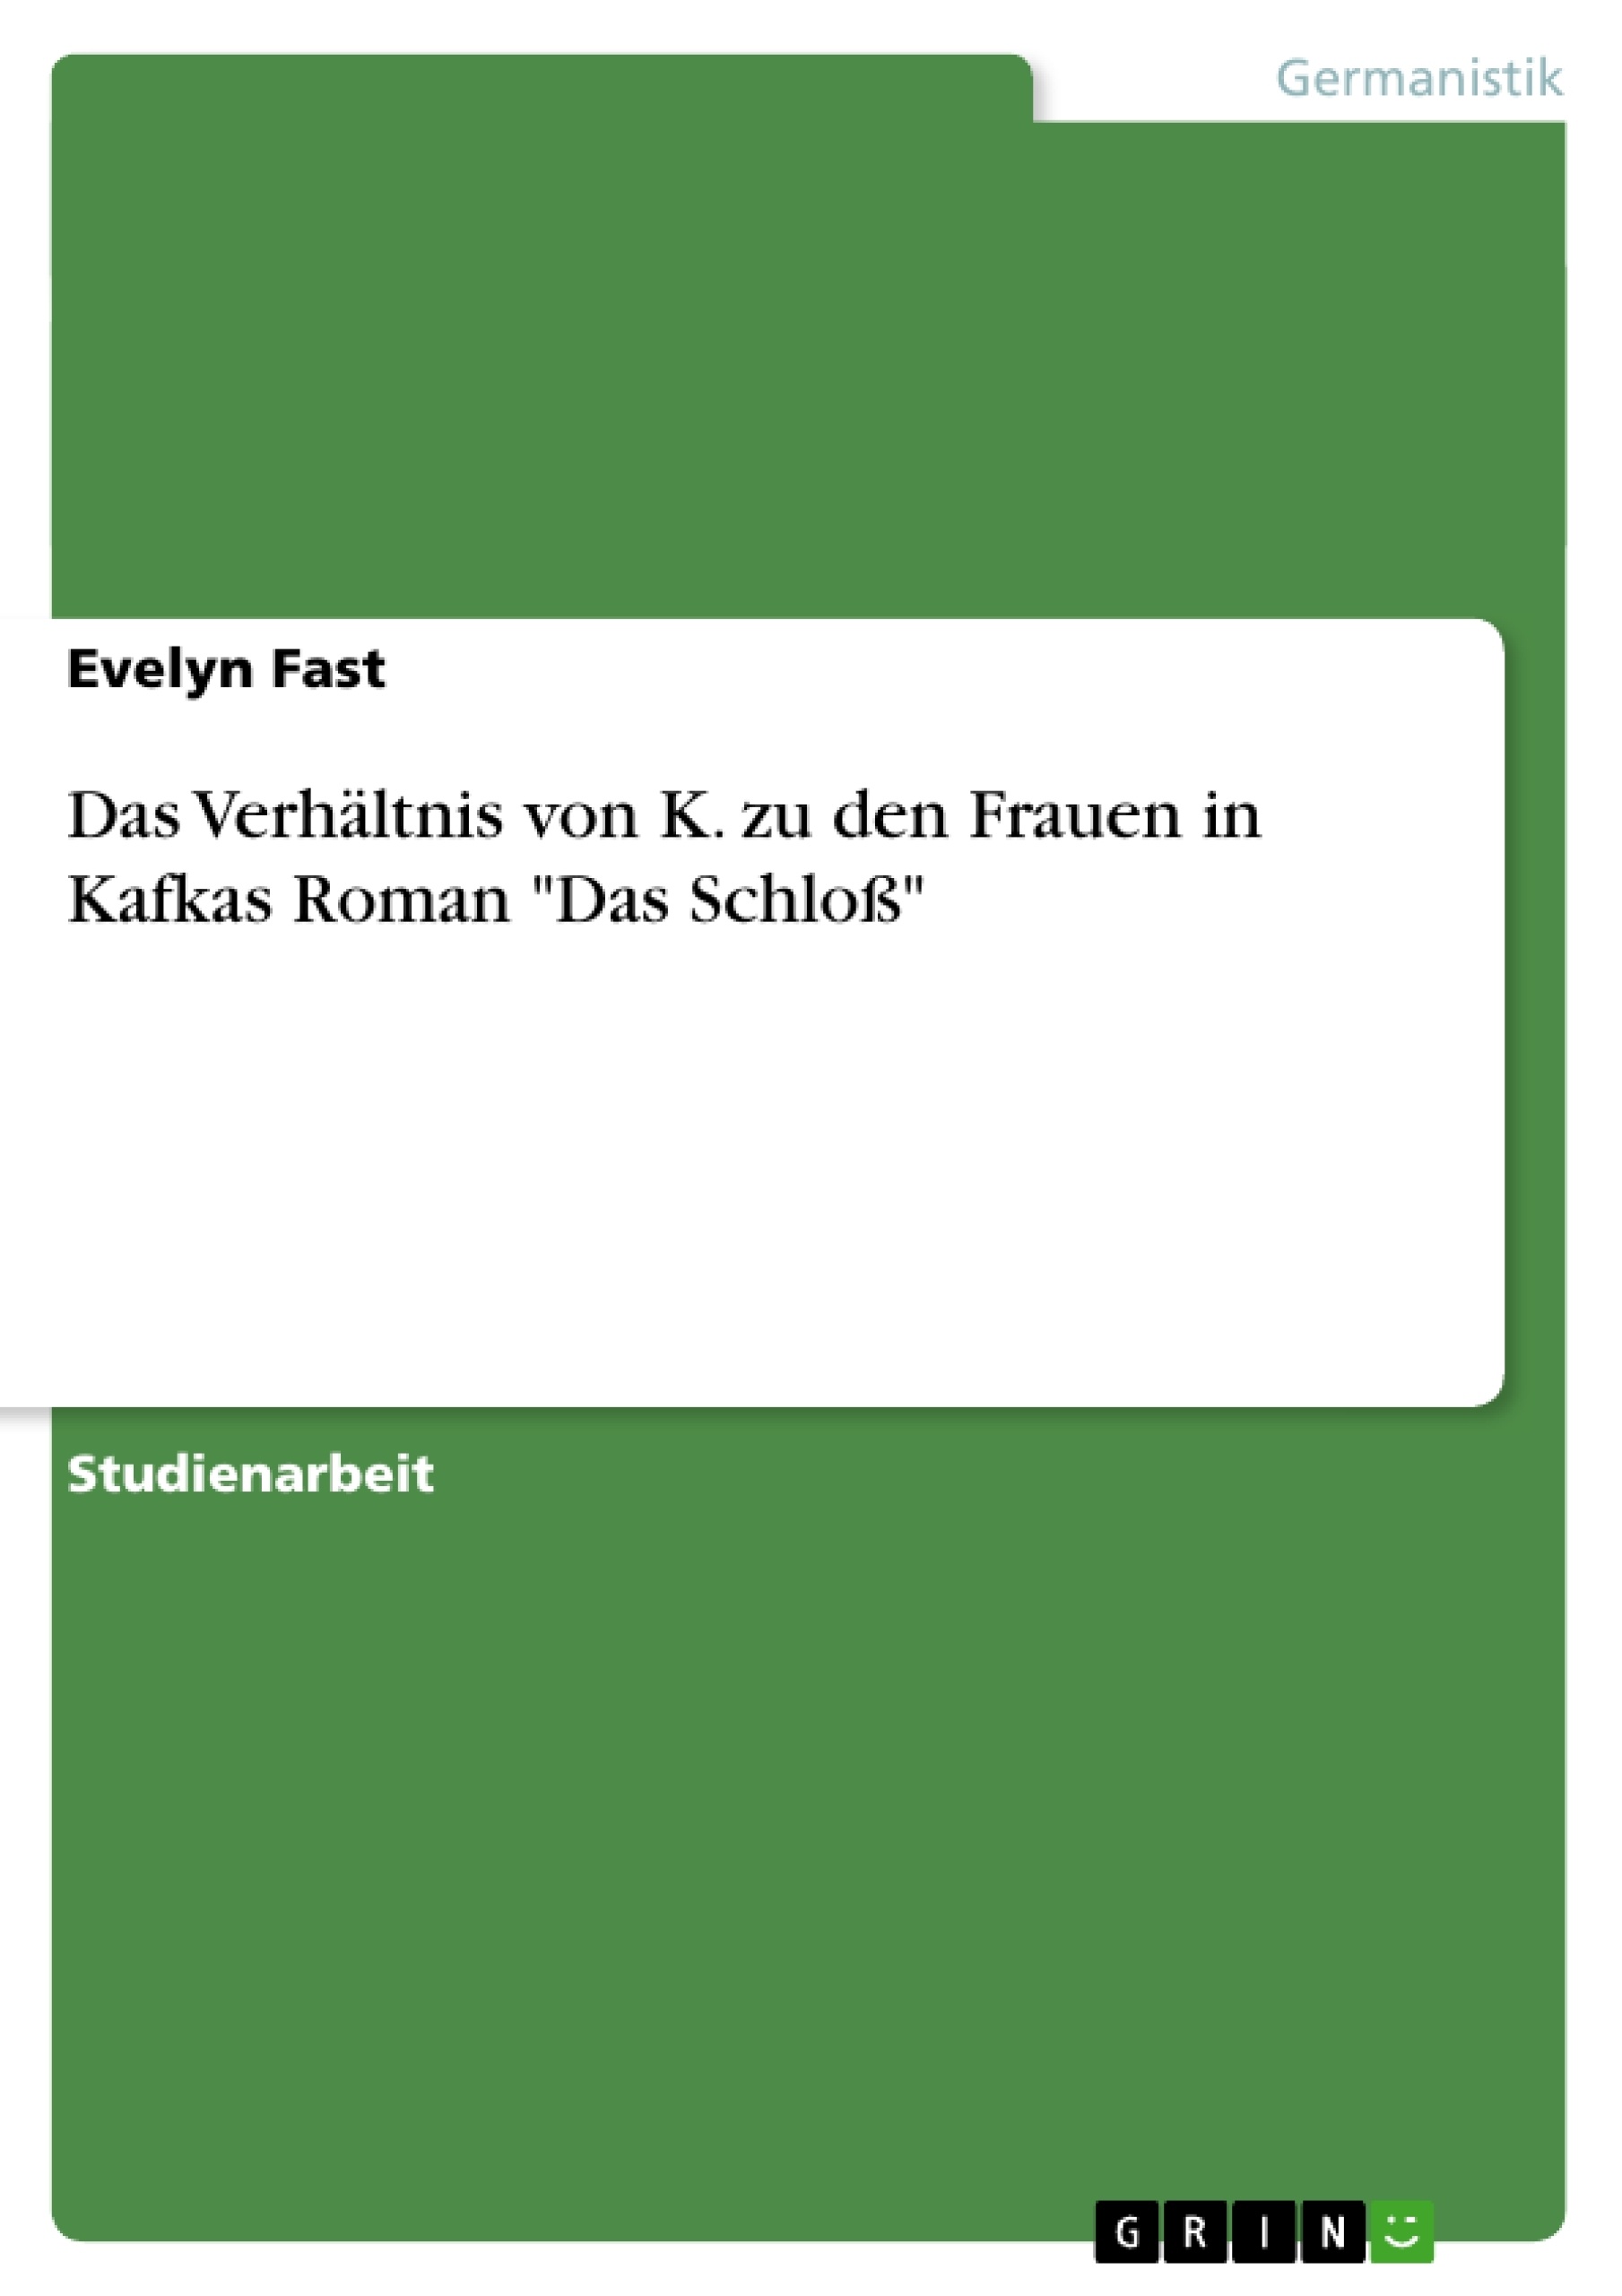 Title: Das Verhältnis von K. zu den Frauen in Kafkas Roman "Das Schloß"